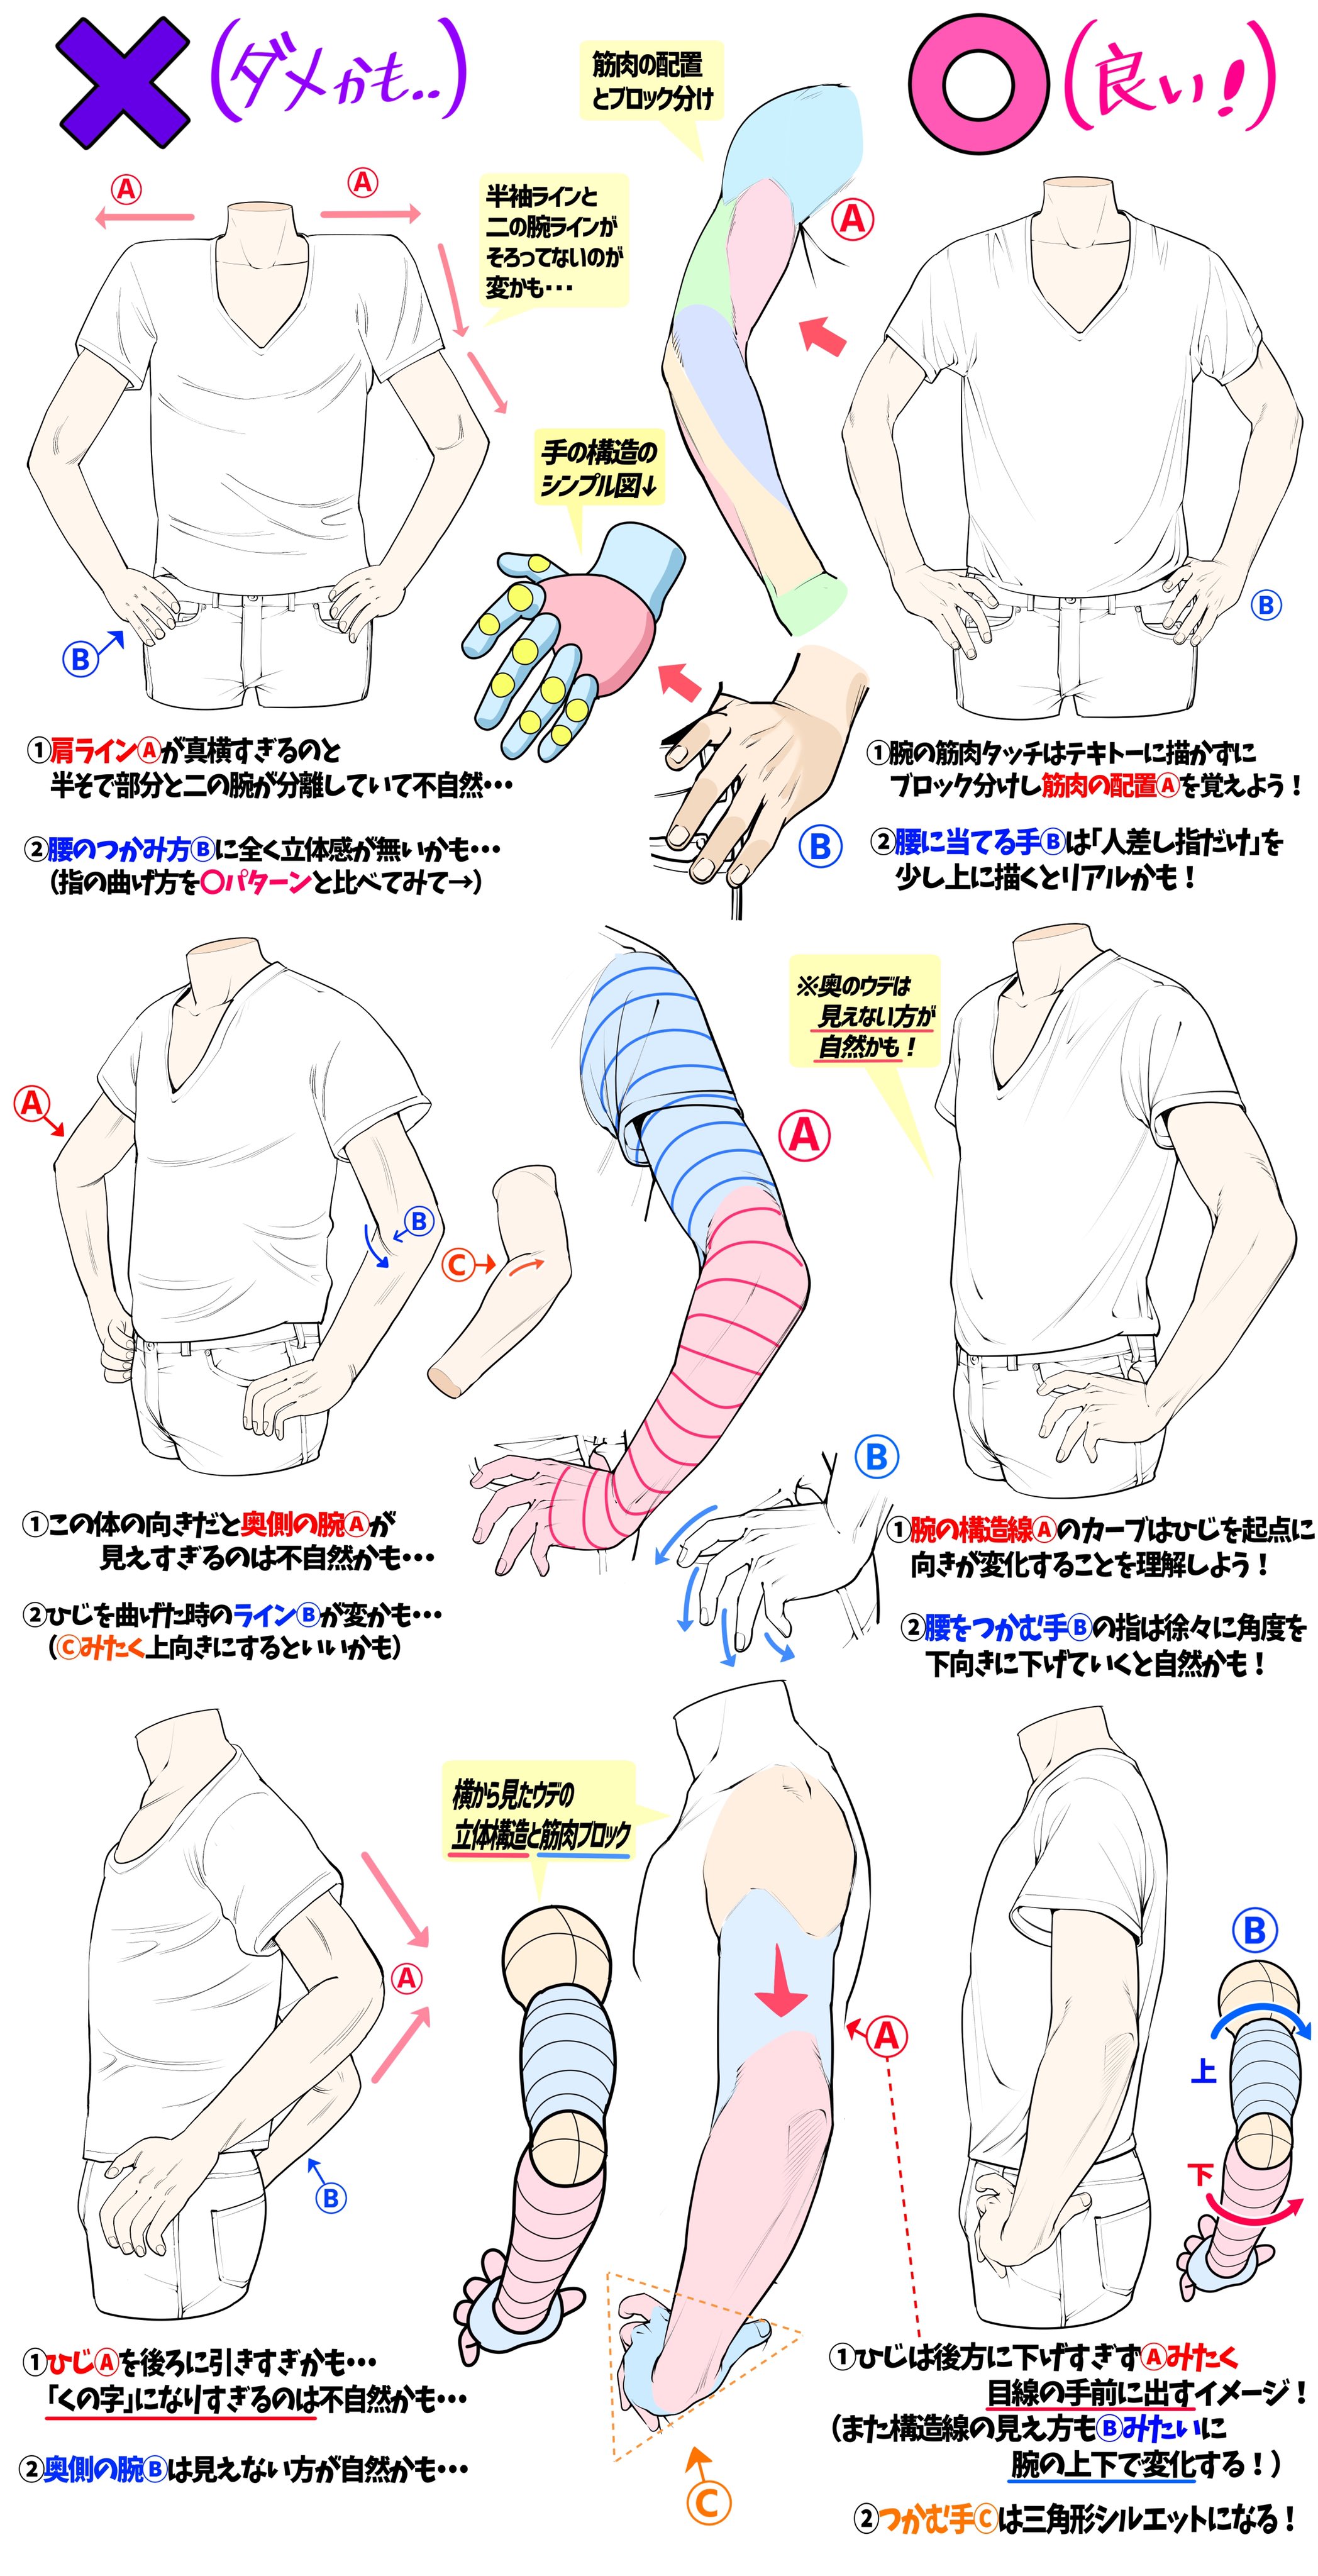 吉村拓也 イラスト講座 腰に手を当てるポーズの描き方 腕の構図と手のつかみ方 が上達する ダメかも と 良いかも T Co O8uu3xhlm7 Twitter